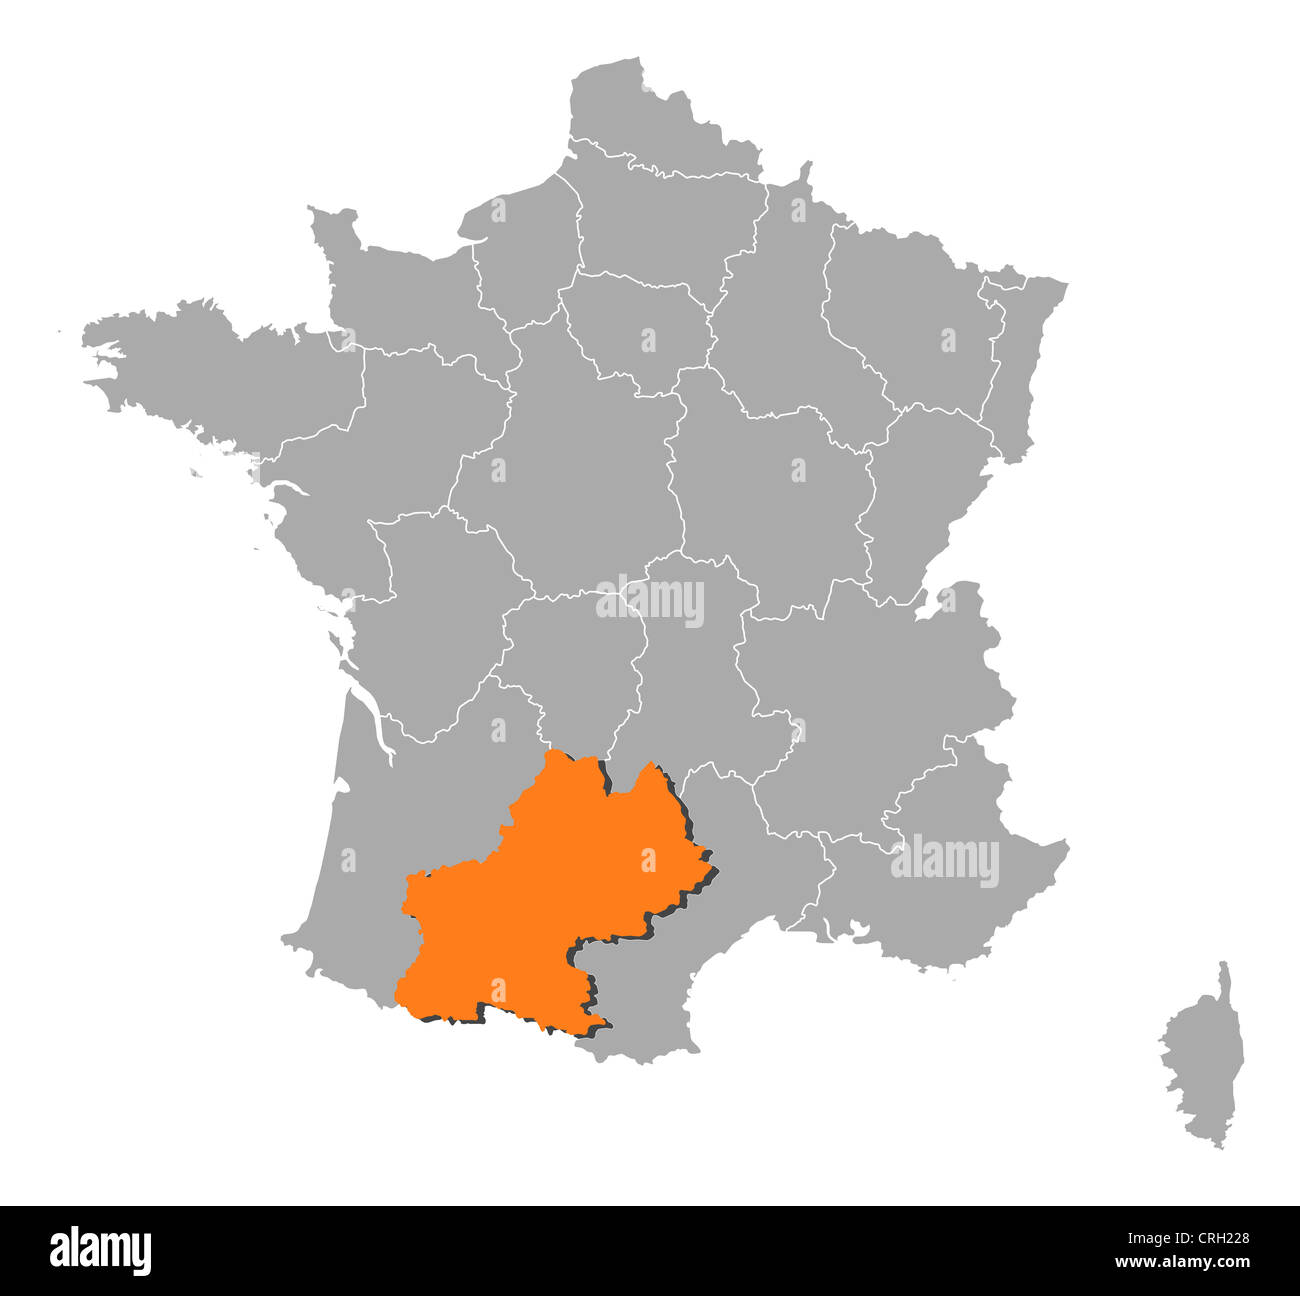 Midi pyrenees outline vector Banque d'images détourées - Alamy